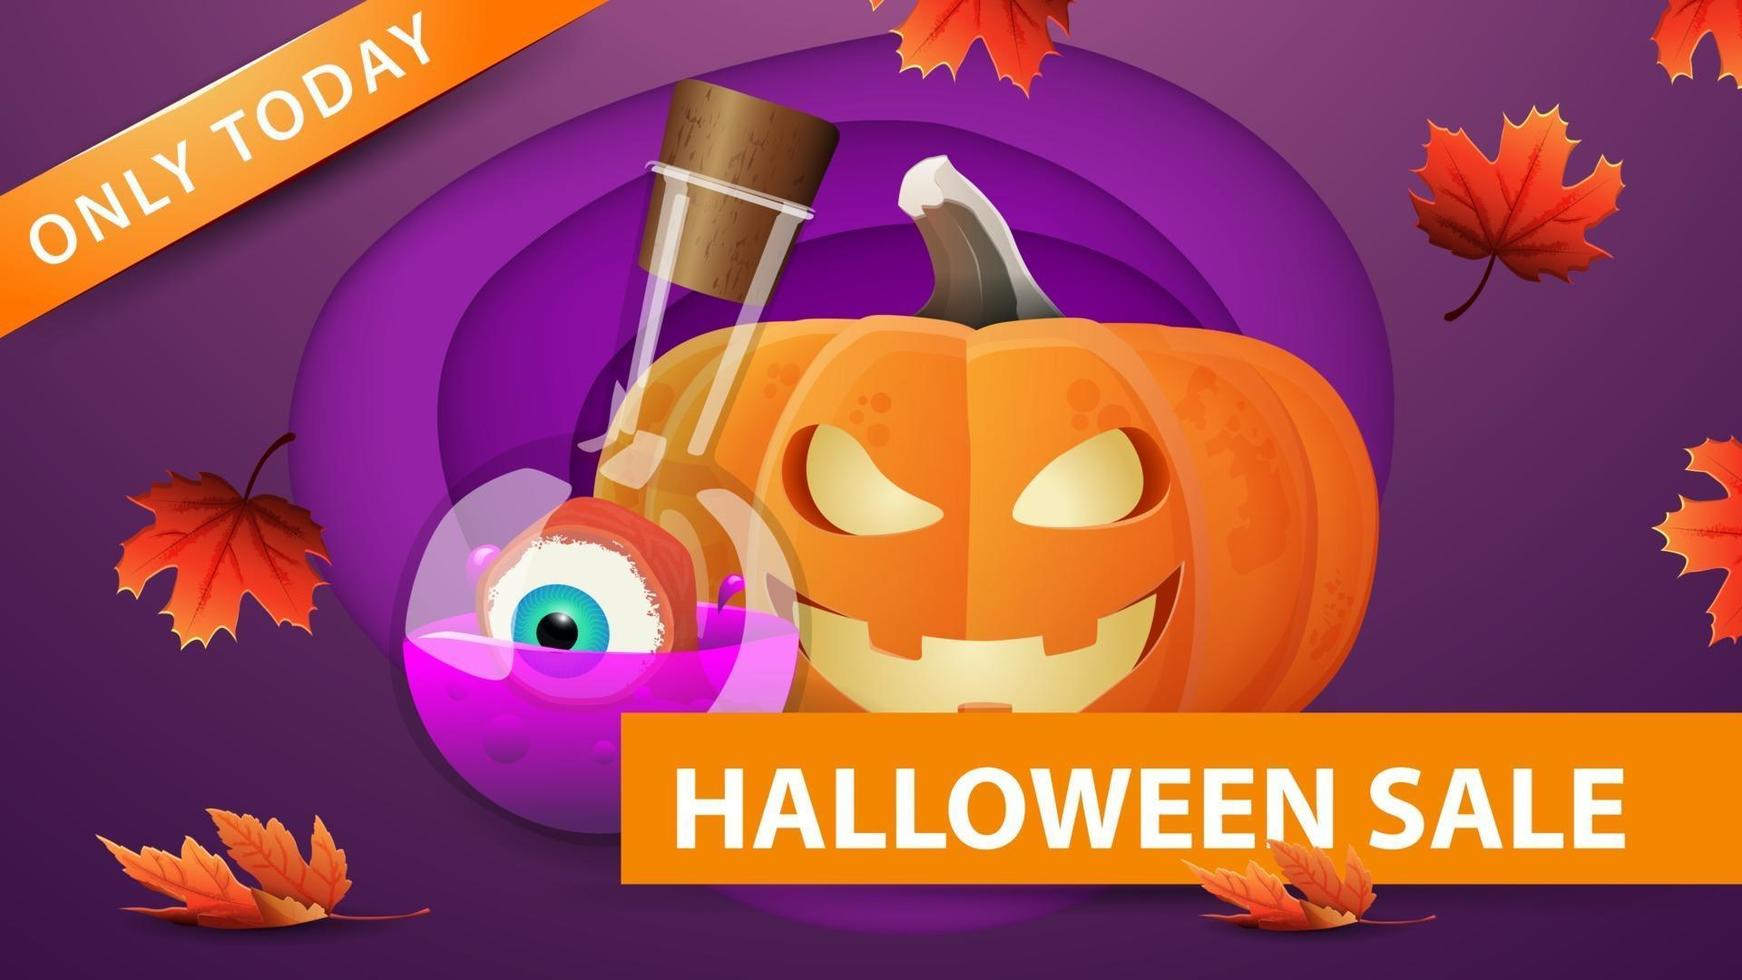 venta de halloween, banner web de descuento púrpura en estilo de corte de papel con calabaza y poción de bruja. diseño moderno de banner de descuento vector